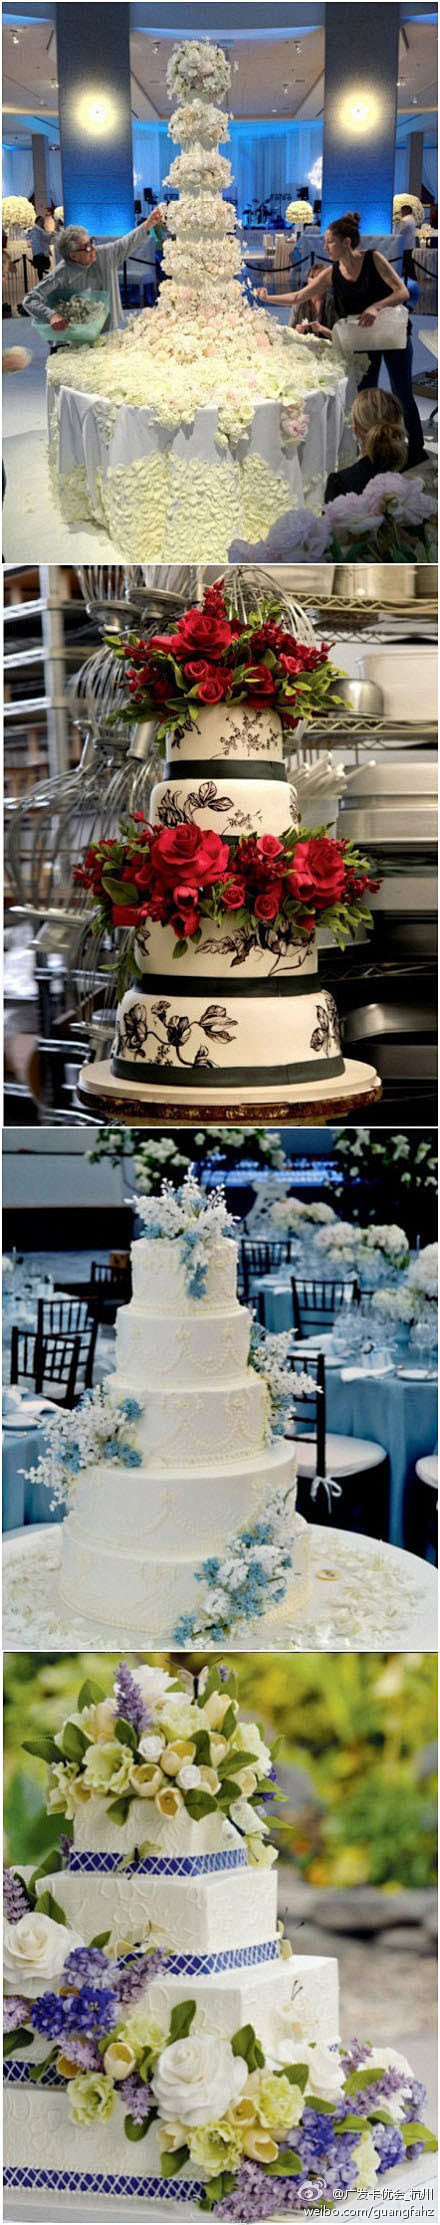 婚礼蛋糕设计师女王Sylvia Wein...